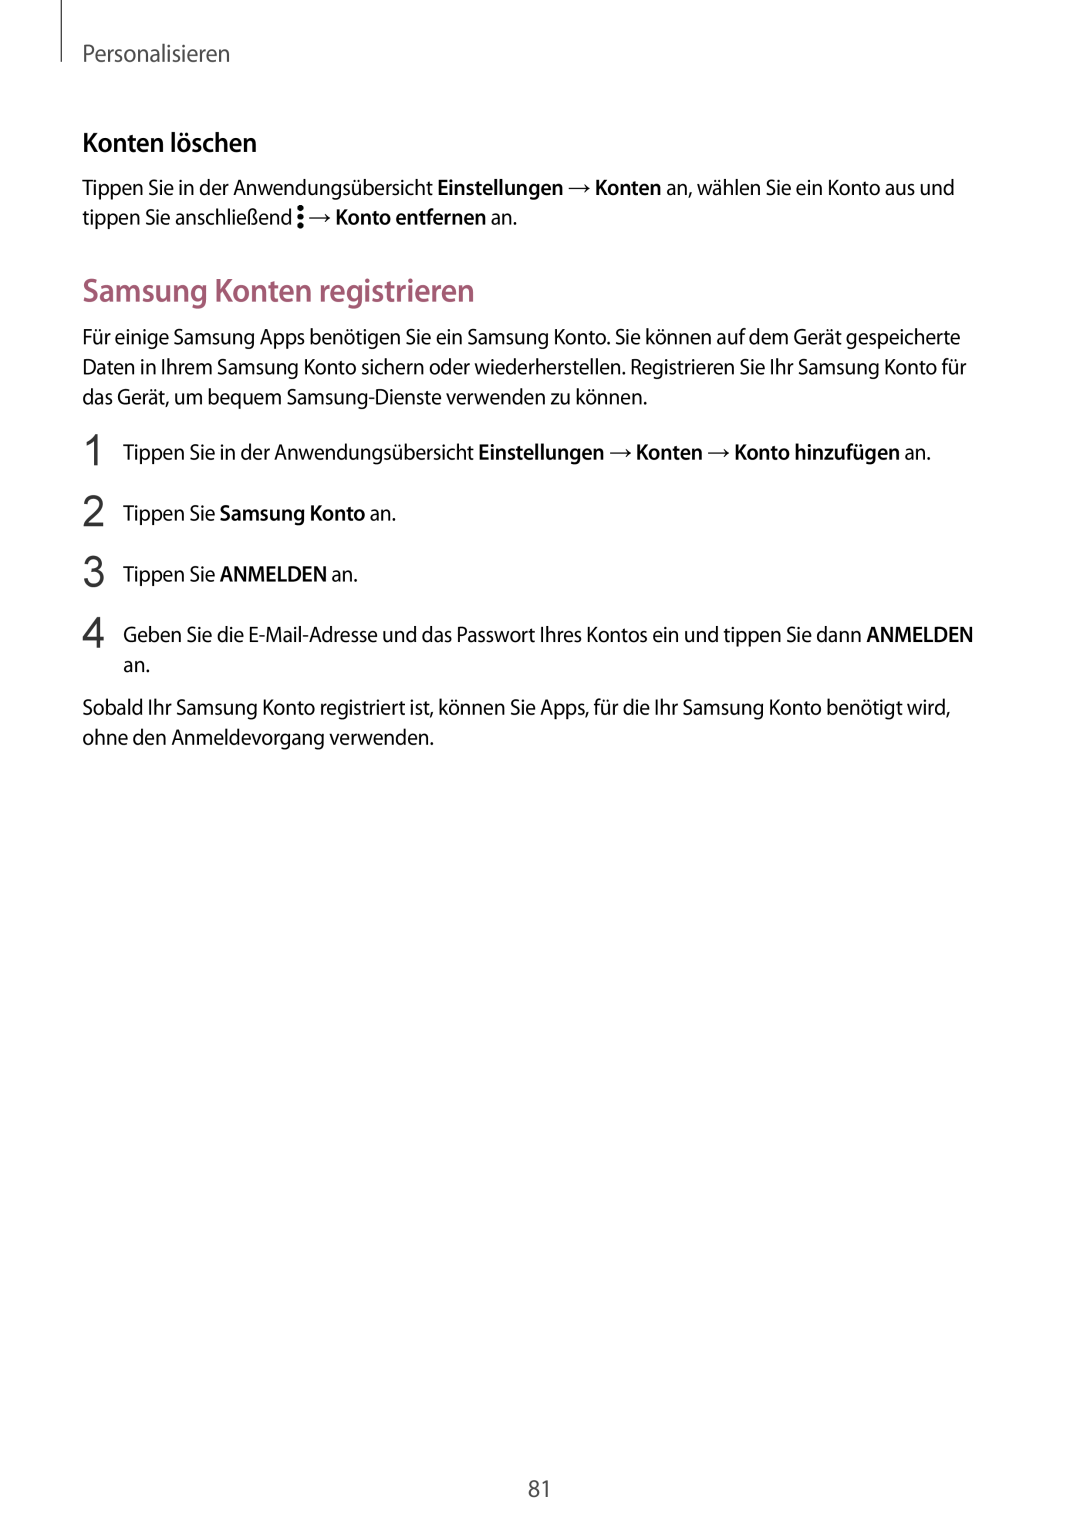 Samsung SM-N910FZKEVGR, SM-N910FZWEEUR, SM-N910FZWEDRE manual Samsung Konten registrieren, Konten löschen, Personalisieren 